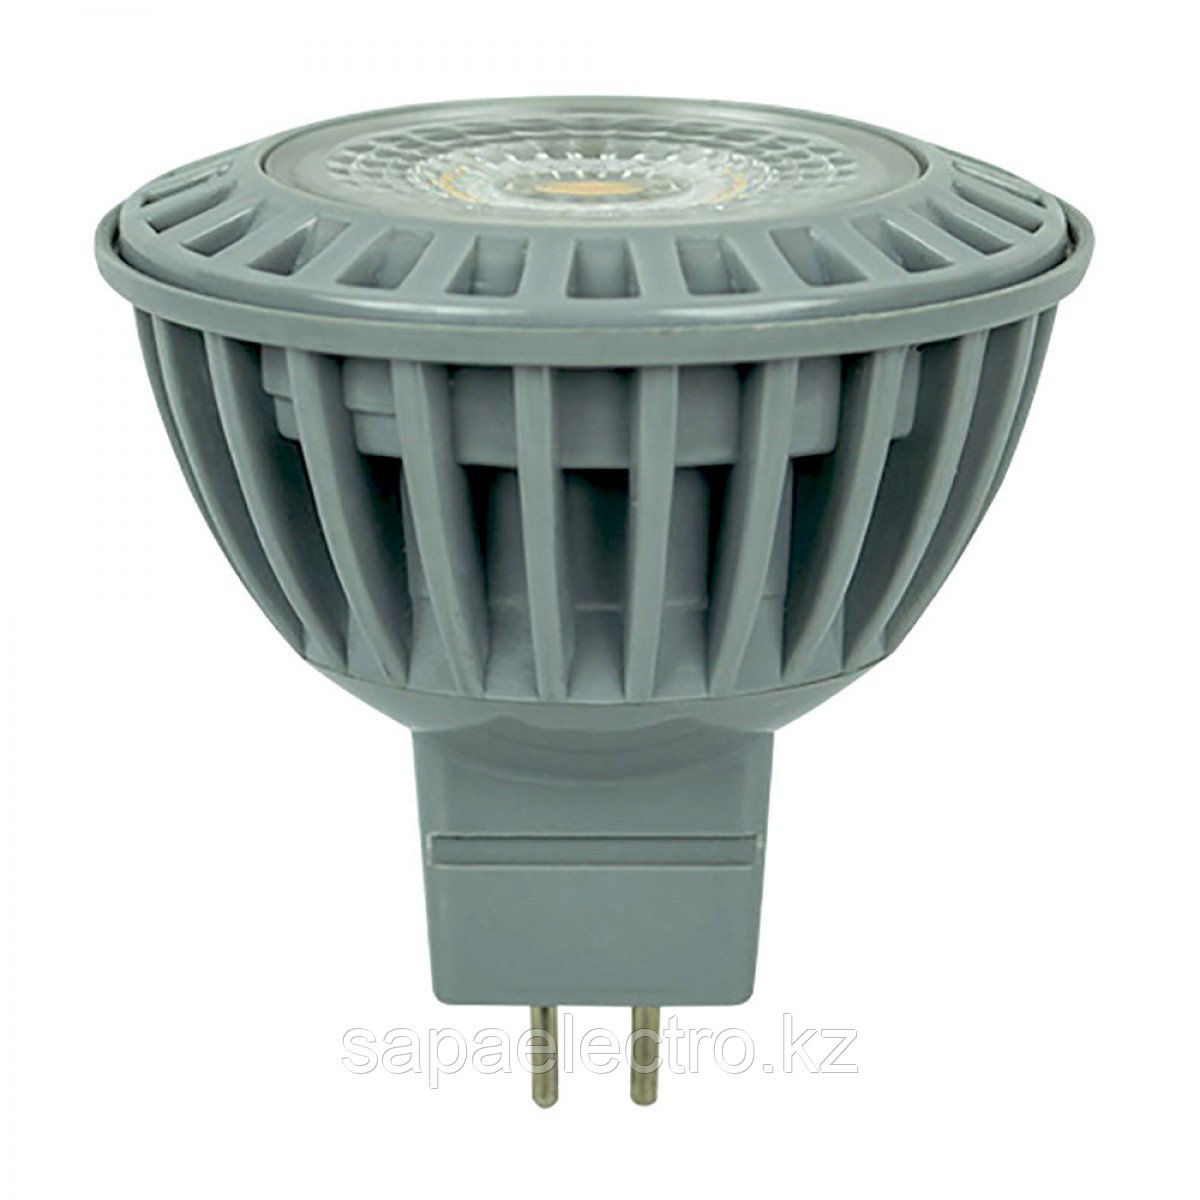 Лампа LED JCDR COB 6W 450LM 2700K (TL)100шт